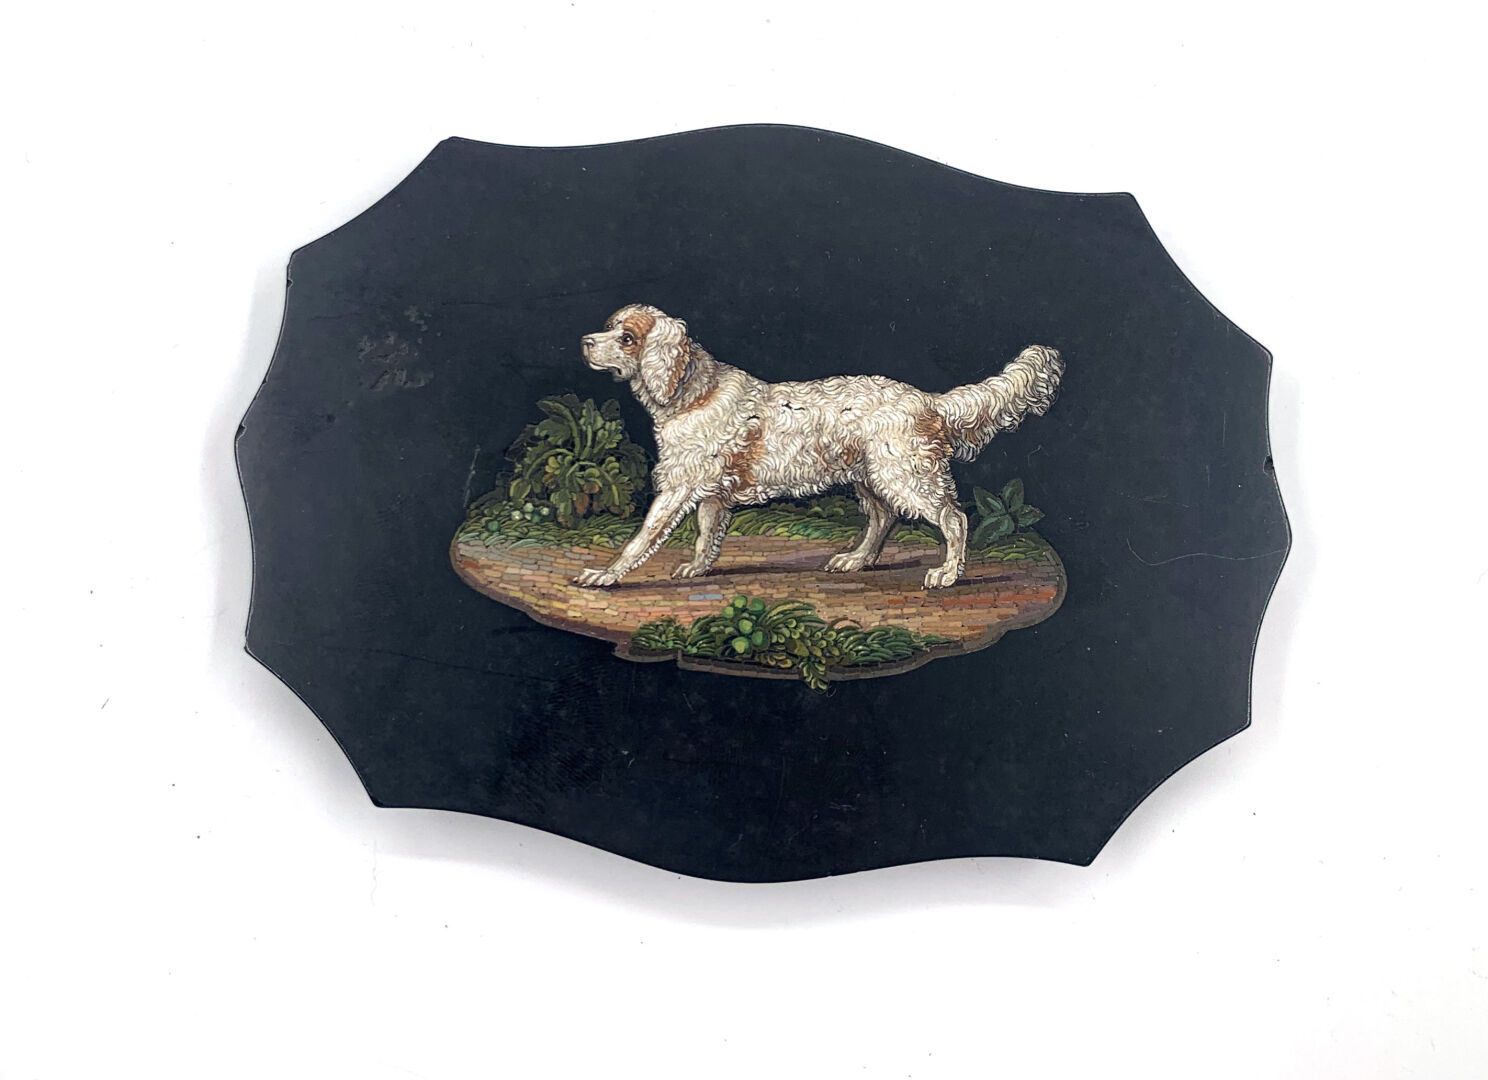 Null Pisapapeles de mármol negro con un micromosaico de un perro.
10,5 x 13,7 cm